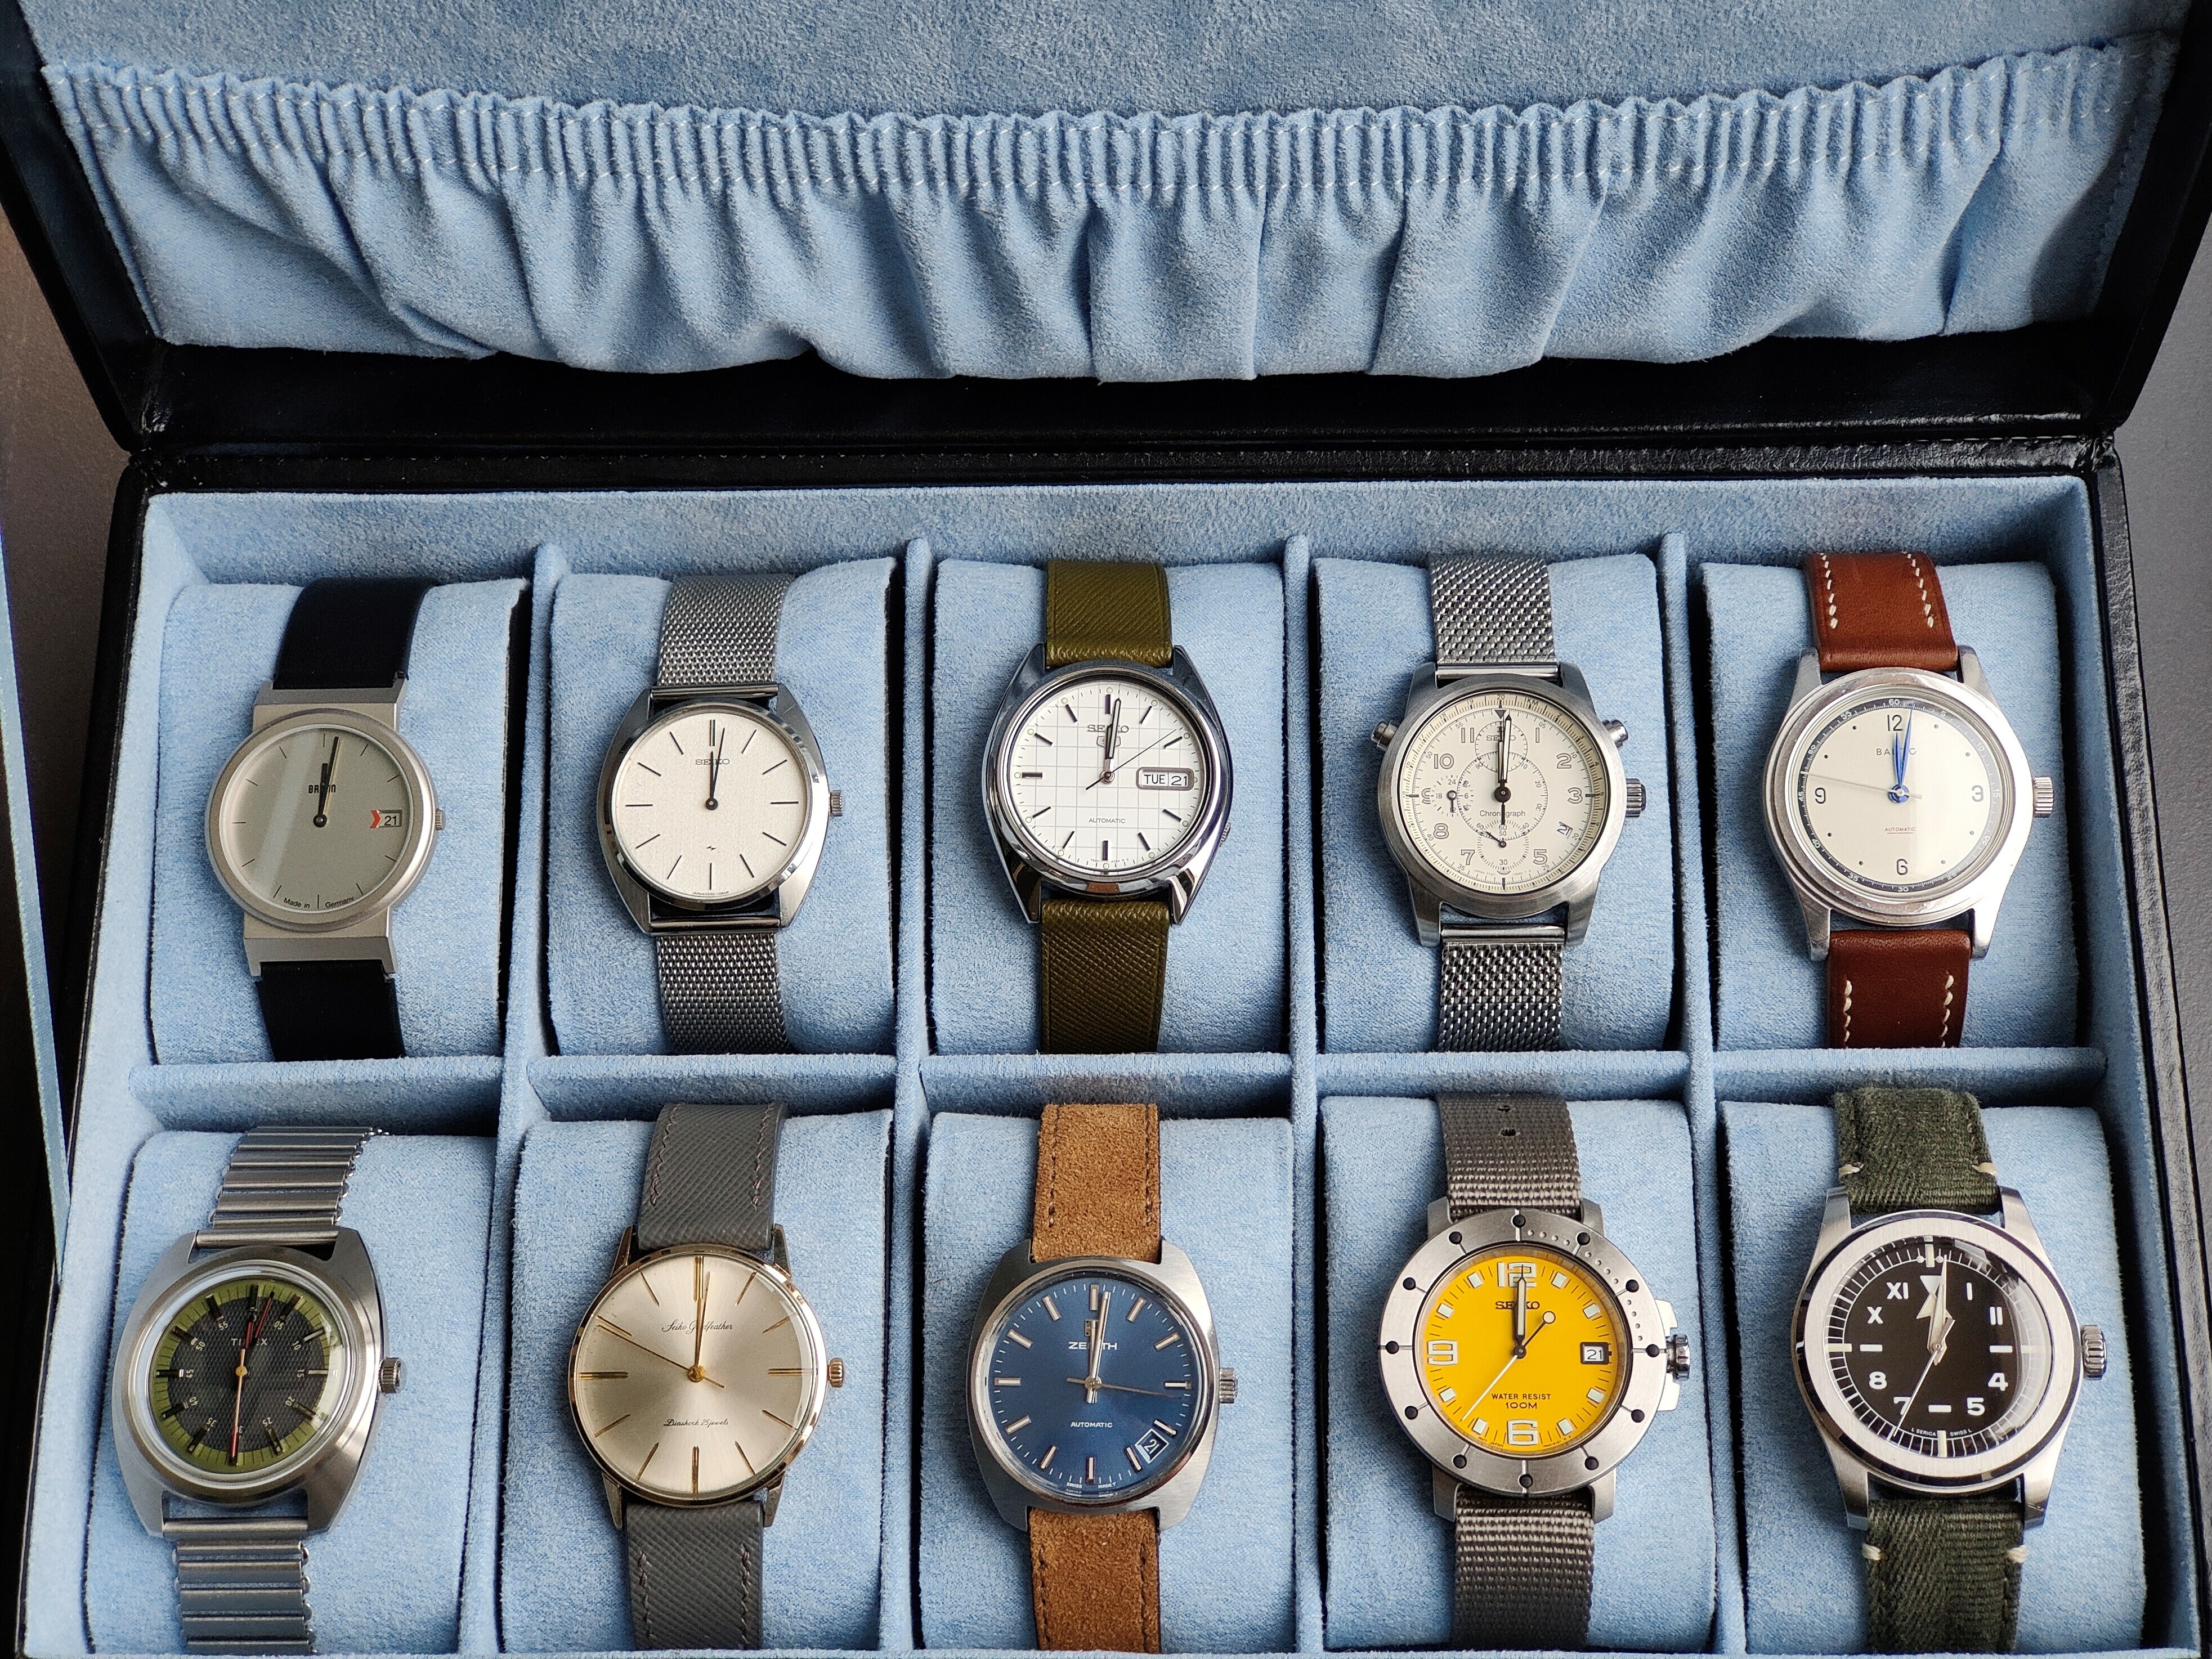 Seiko quartz watch 7N42-6130 時計 腕時計(アナログ) 